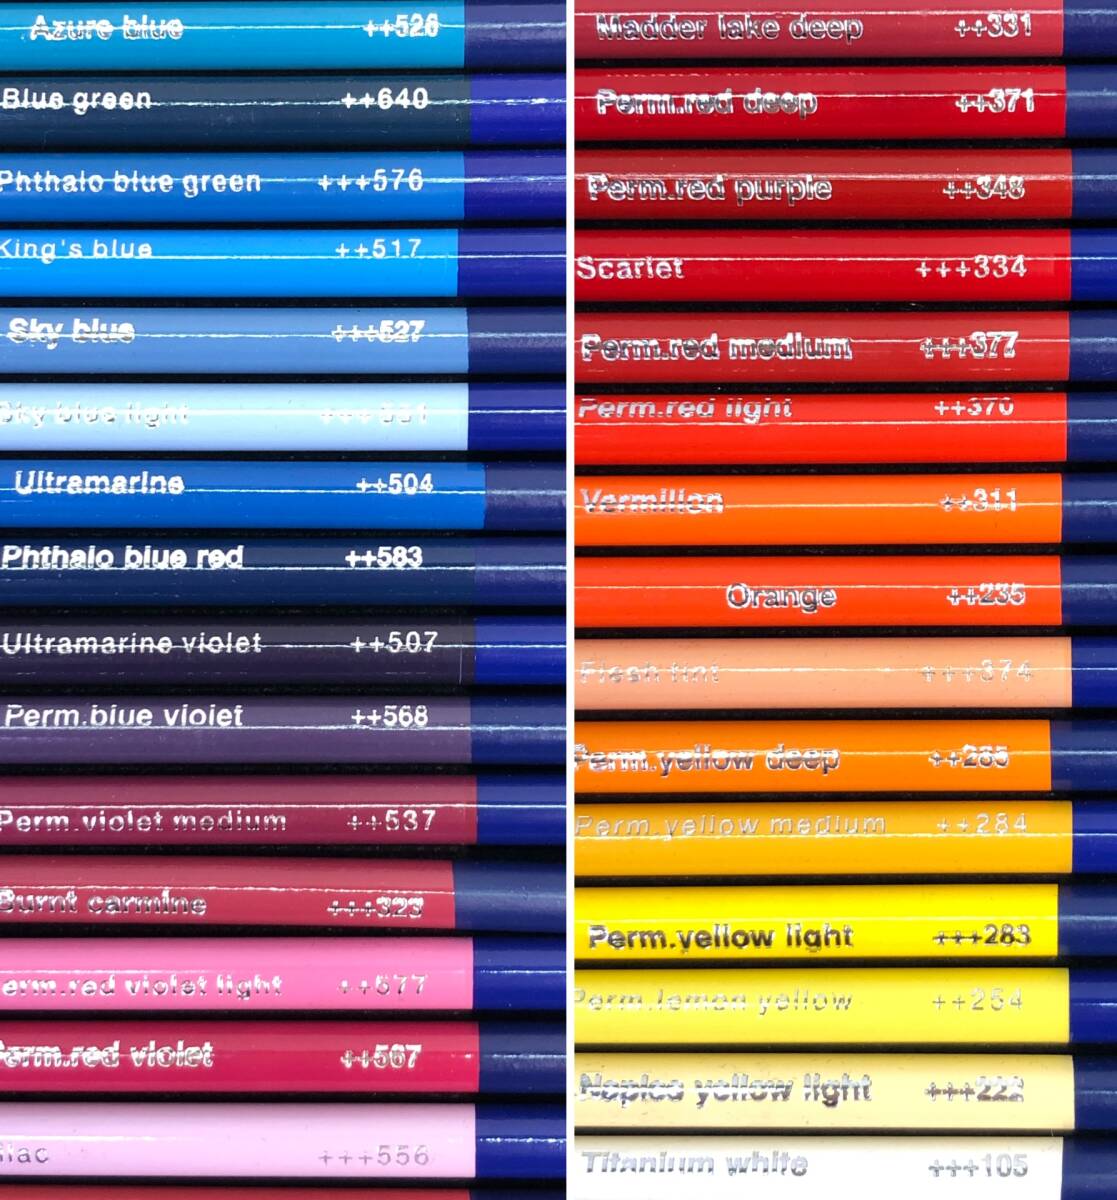 [2039] Van go ho акварель цветные карандаши 60 -цветный набор 97740065 TALENS VAN GOGH товары для творчества текущее состояние товар 